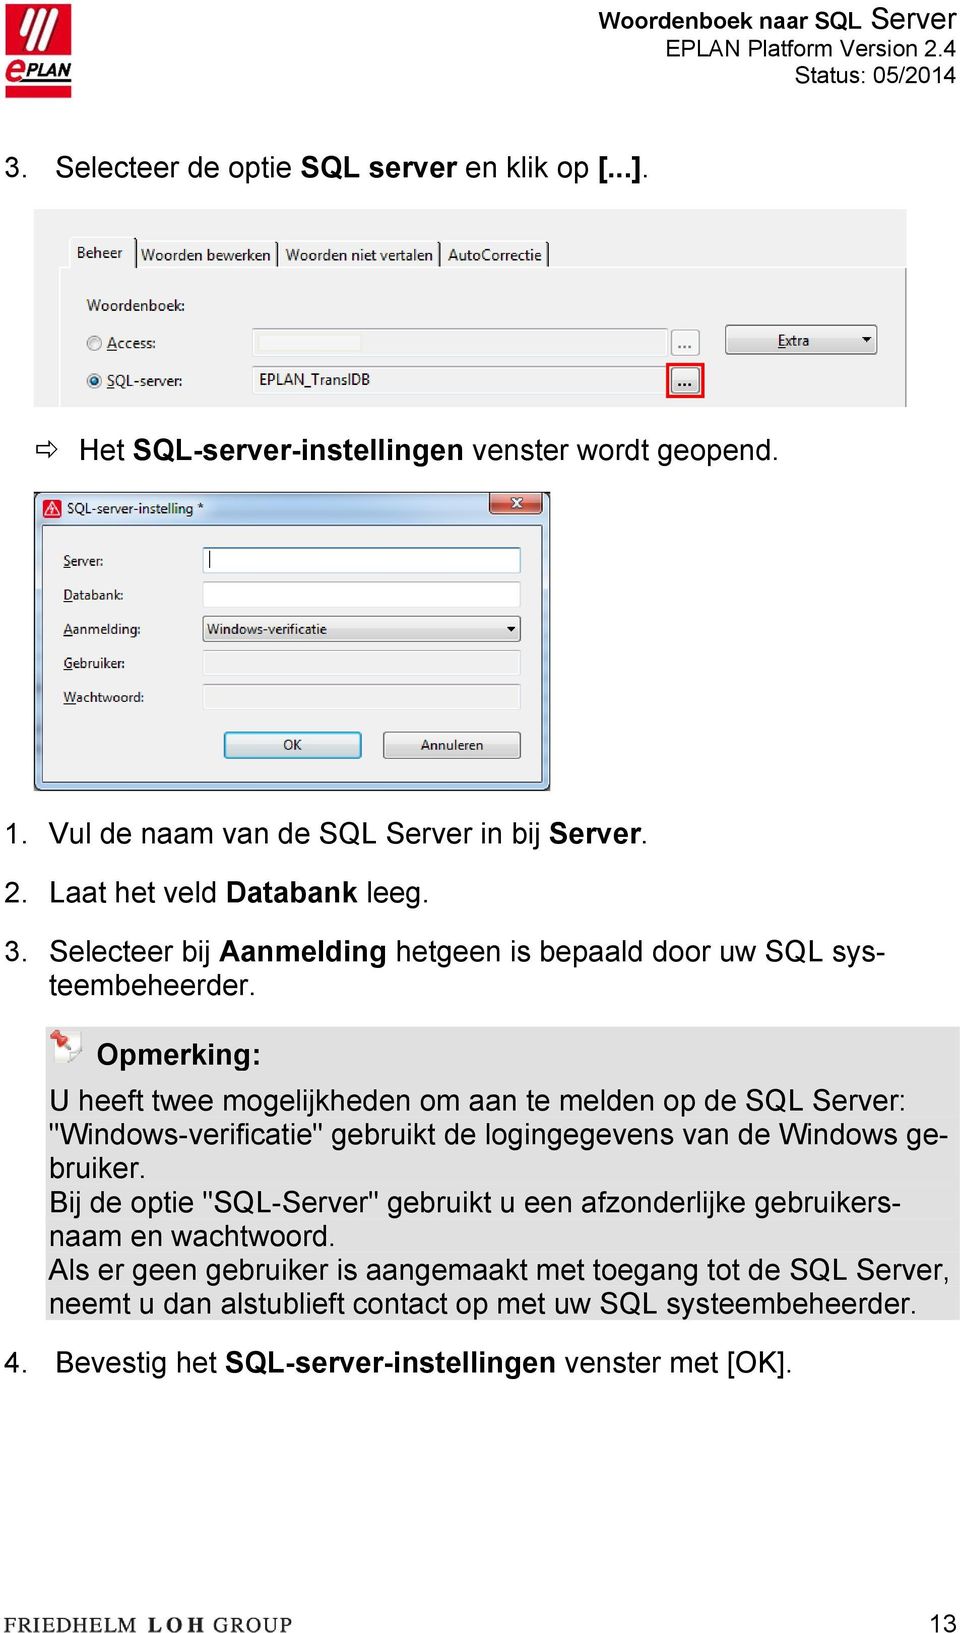 Opmerking: U heeft twee mogelijkheden om aan te melden op de SQL Server: "Windows-verificatie" gebruikt de logingegevens van de Windows gebruiker.